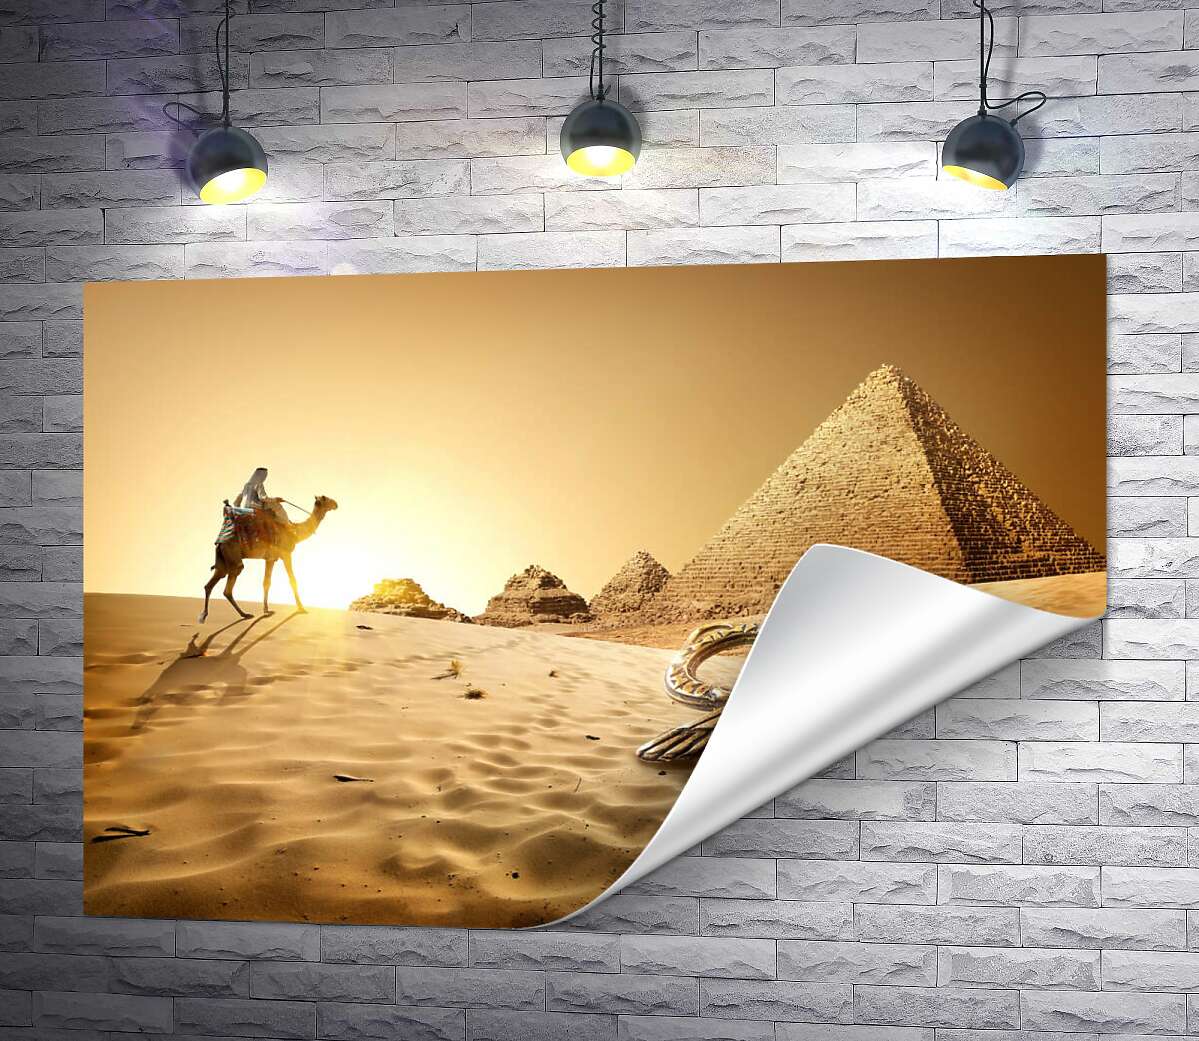 друк Символ життя - анх в пісках пустелі на фоні єгипетських пірамід